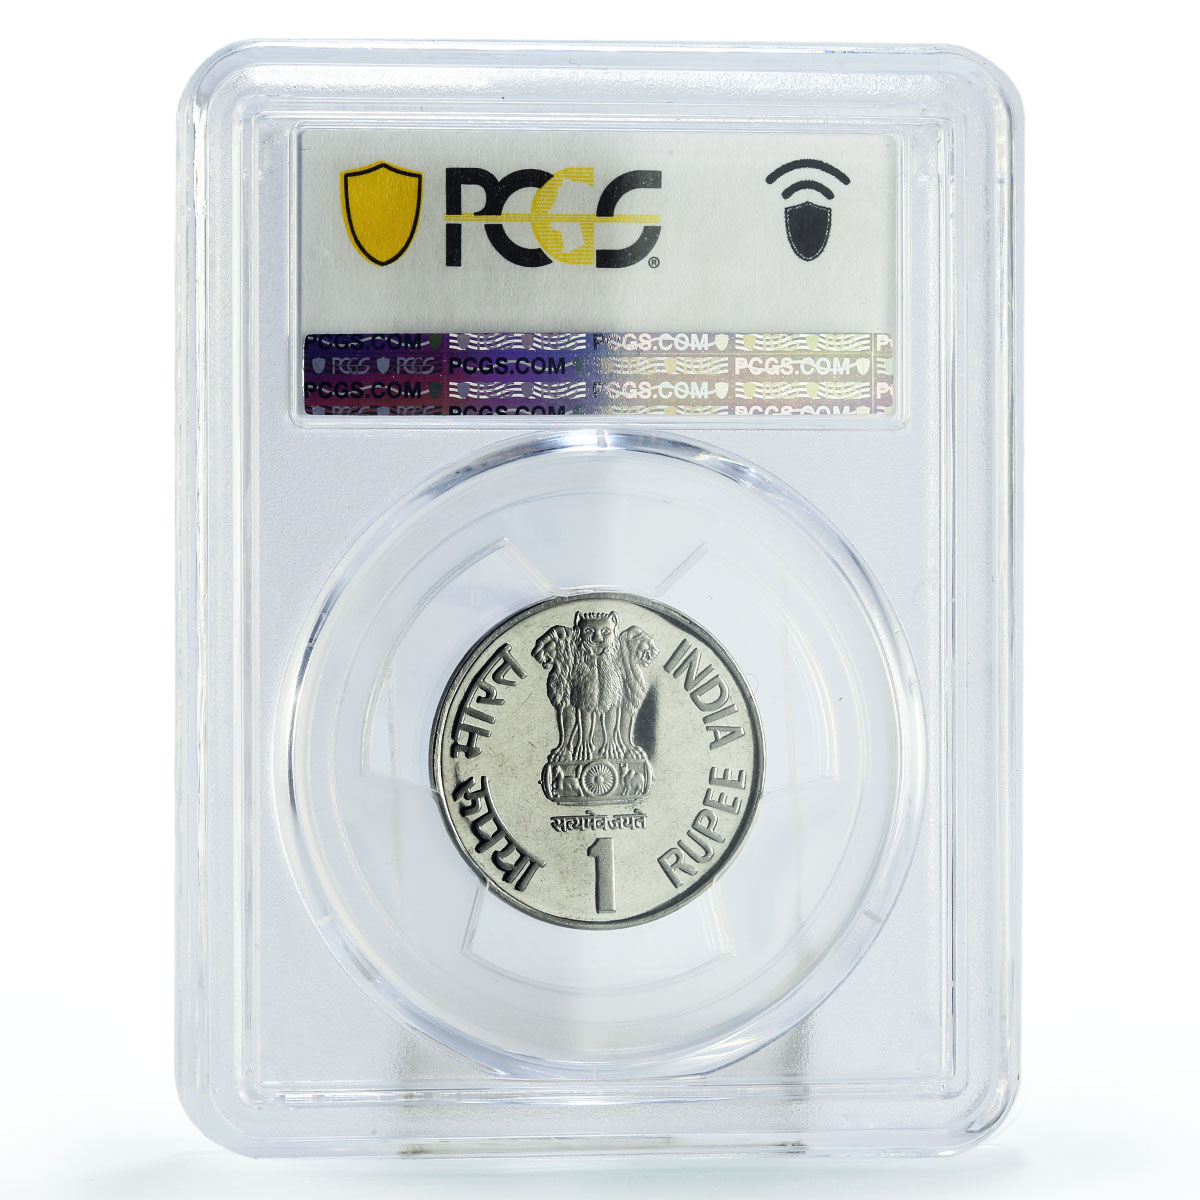 India 1 rupee Jaya Prakash Narayan Centennial Politics PR67 PCGS CuFe coin 2002